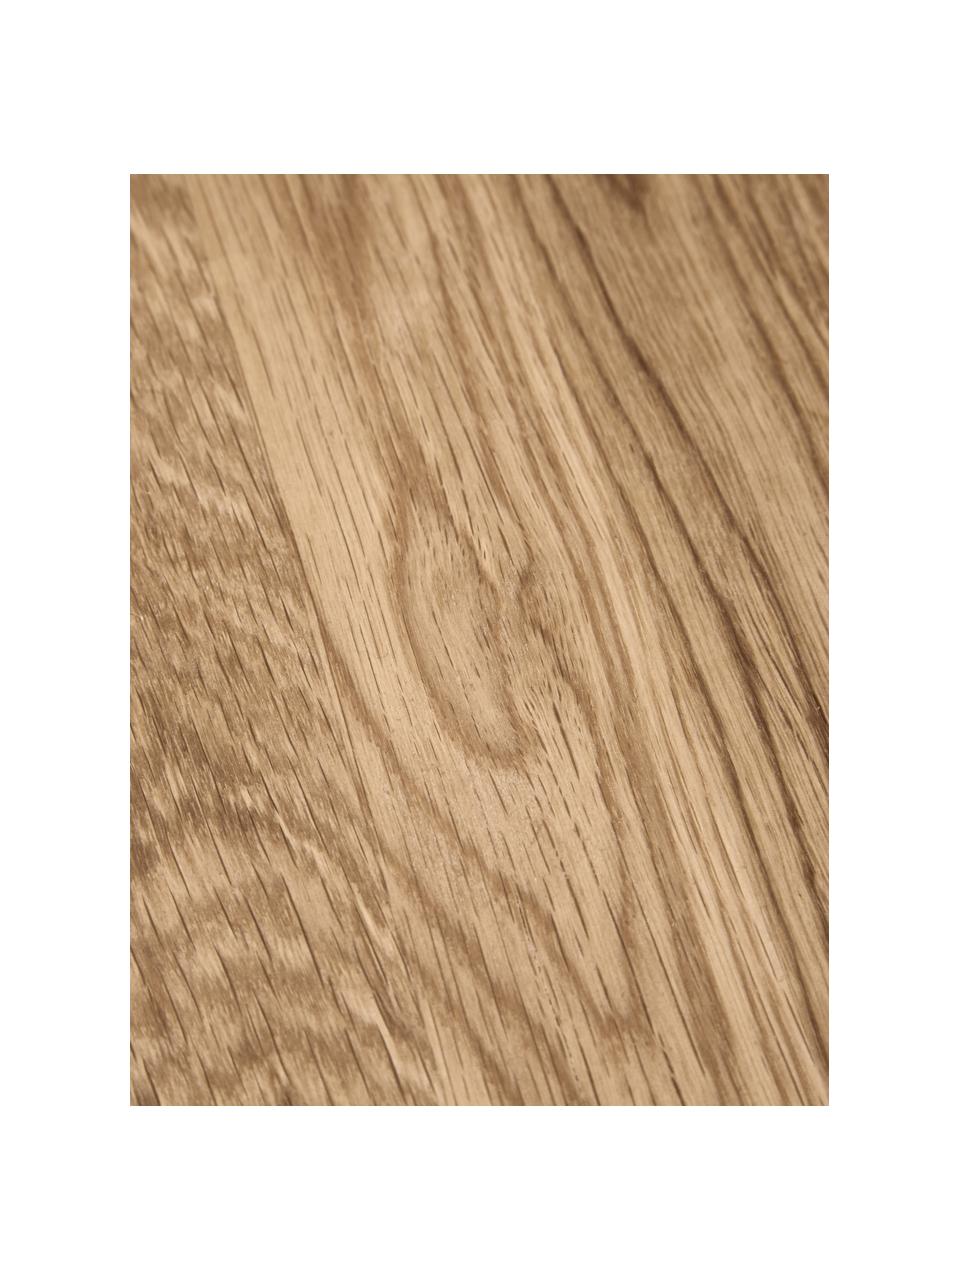 Stolik pomocniczy z drewna dębowego Didi, Lite drewno dębowe olejowane

Ten produkt jest wykonany z drewna pochodzącego ze zrównoważonych upraw, które posiada certyfikat FSC®., Drewno dębowe, Ø 40 x W 45 cm